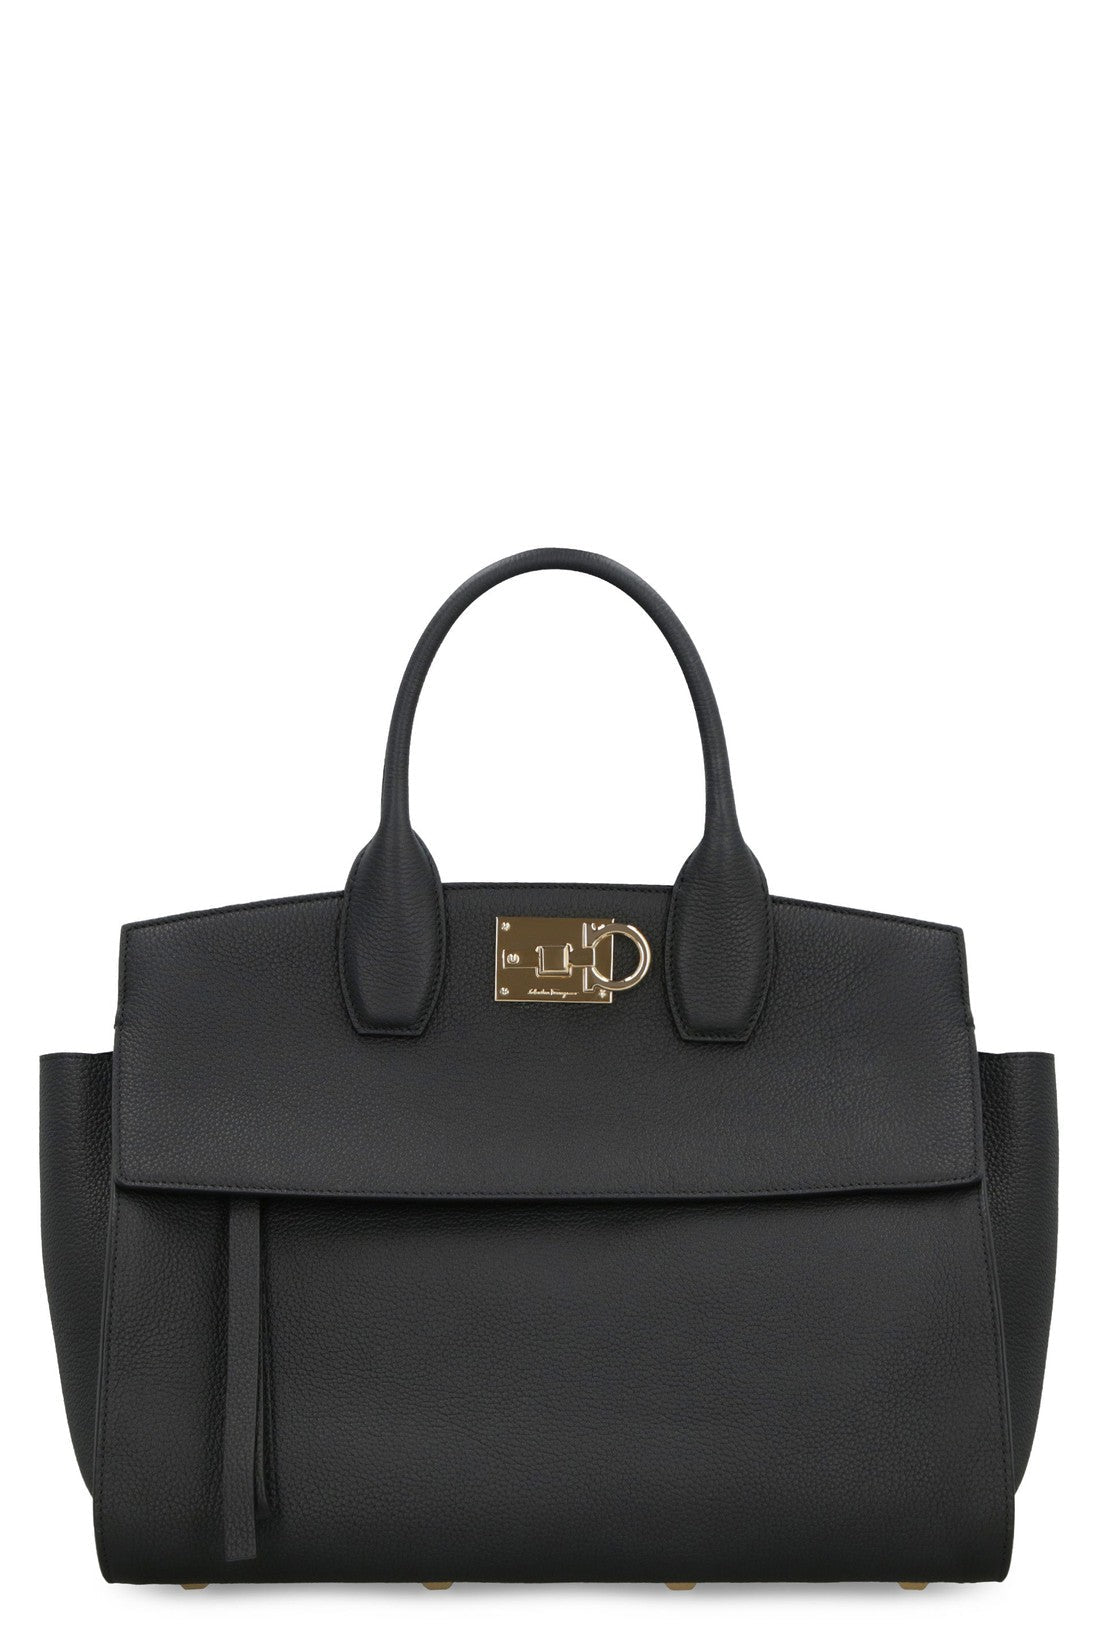 FERRAGAMO-OUTLET-SALE-Studio Soft Leather handbag-ARCHIVIST